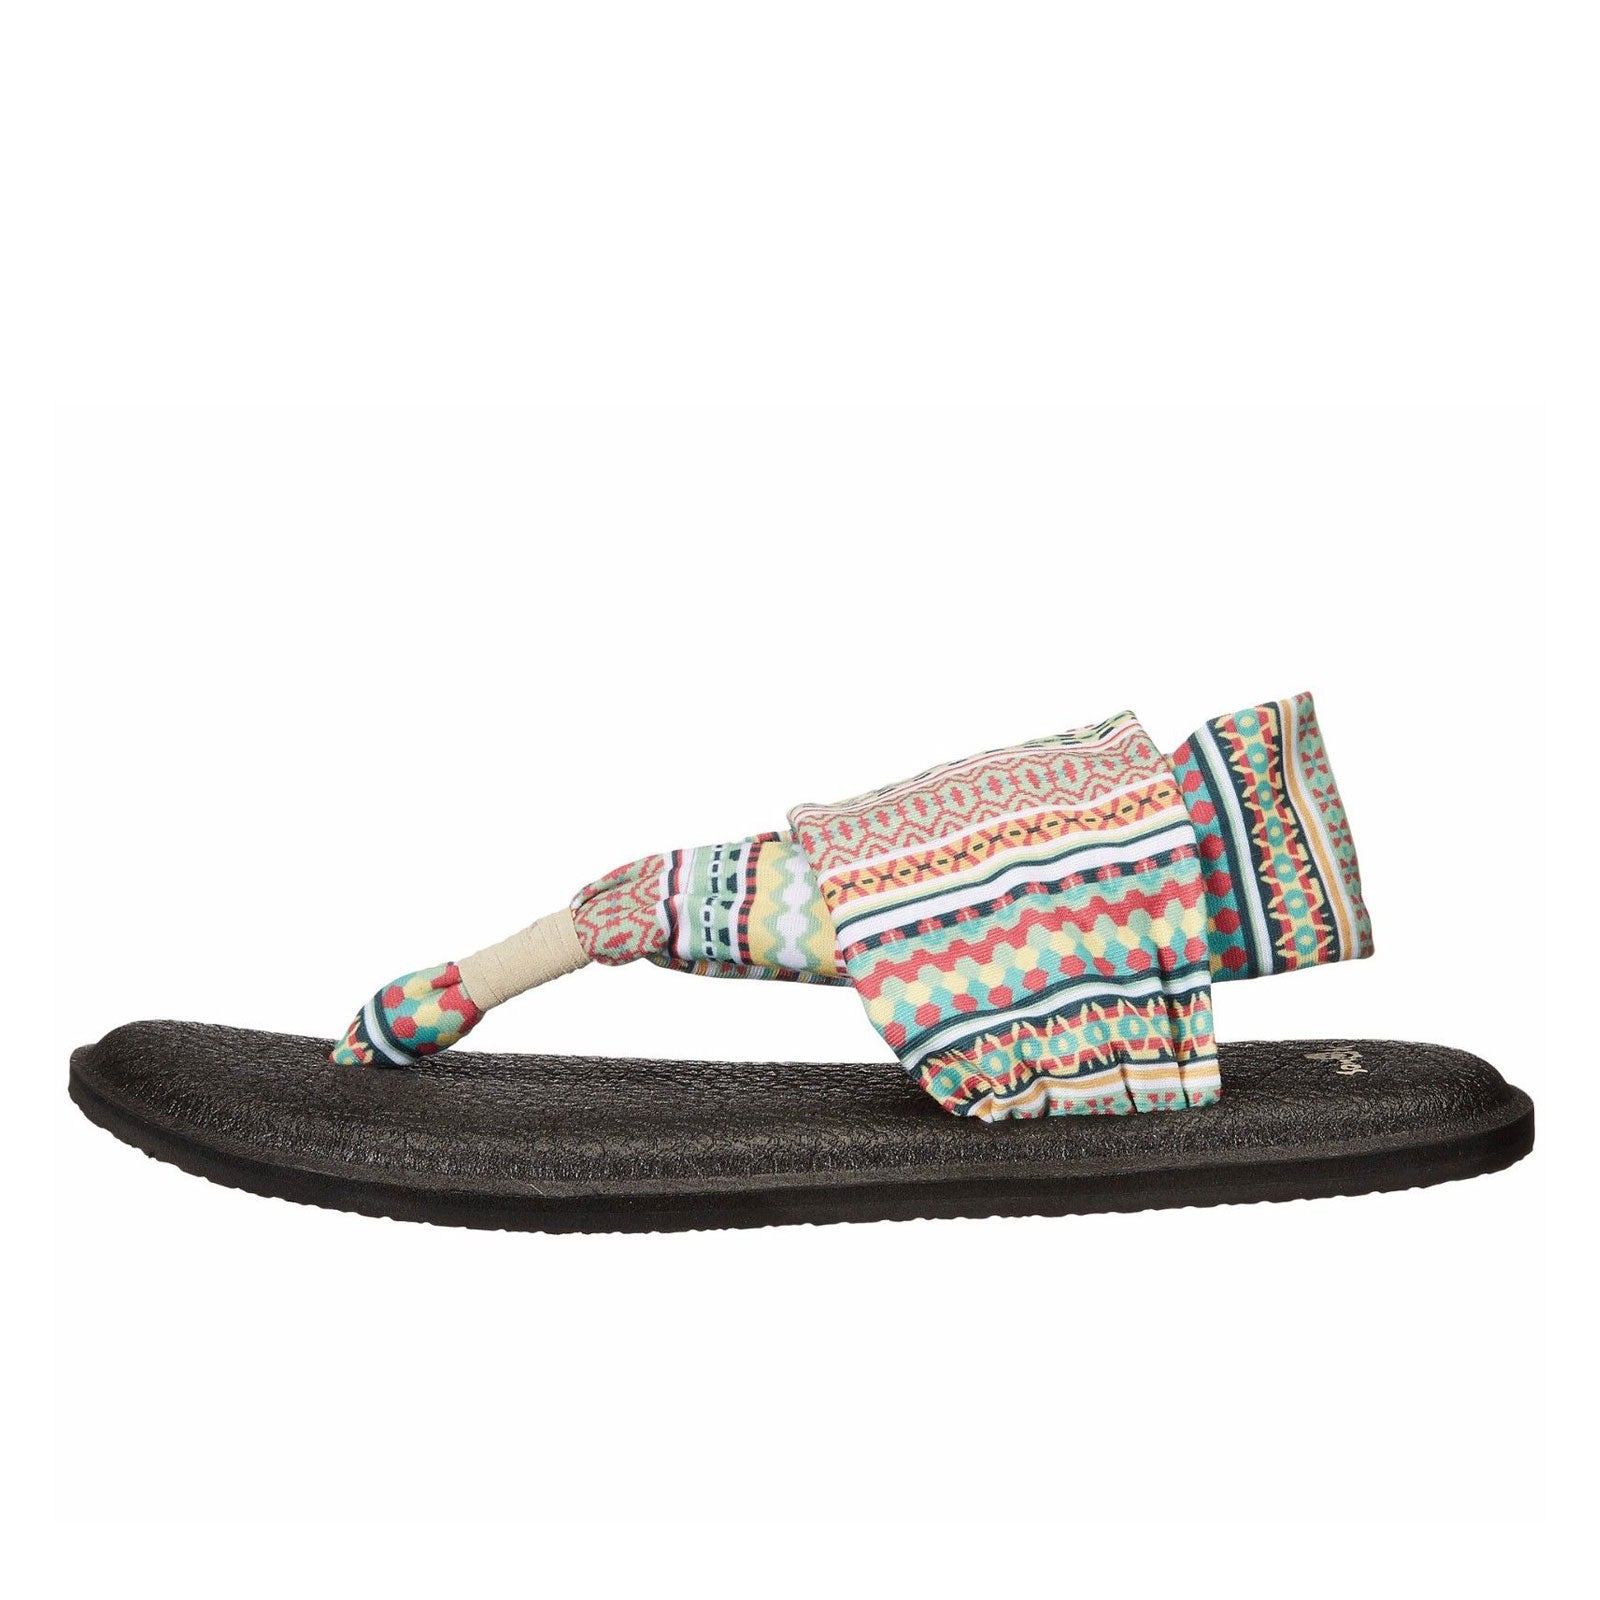 Sanuk Yoga Sling 2 Prints Sandals - Women's